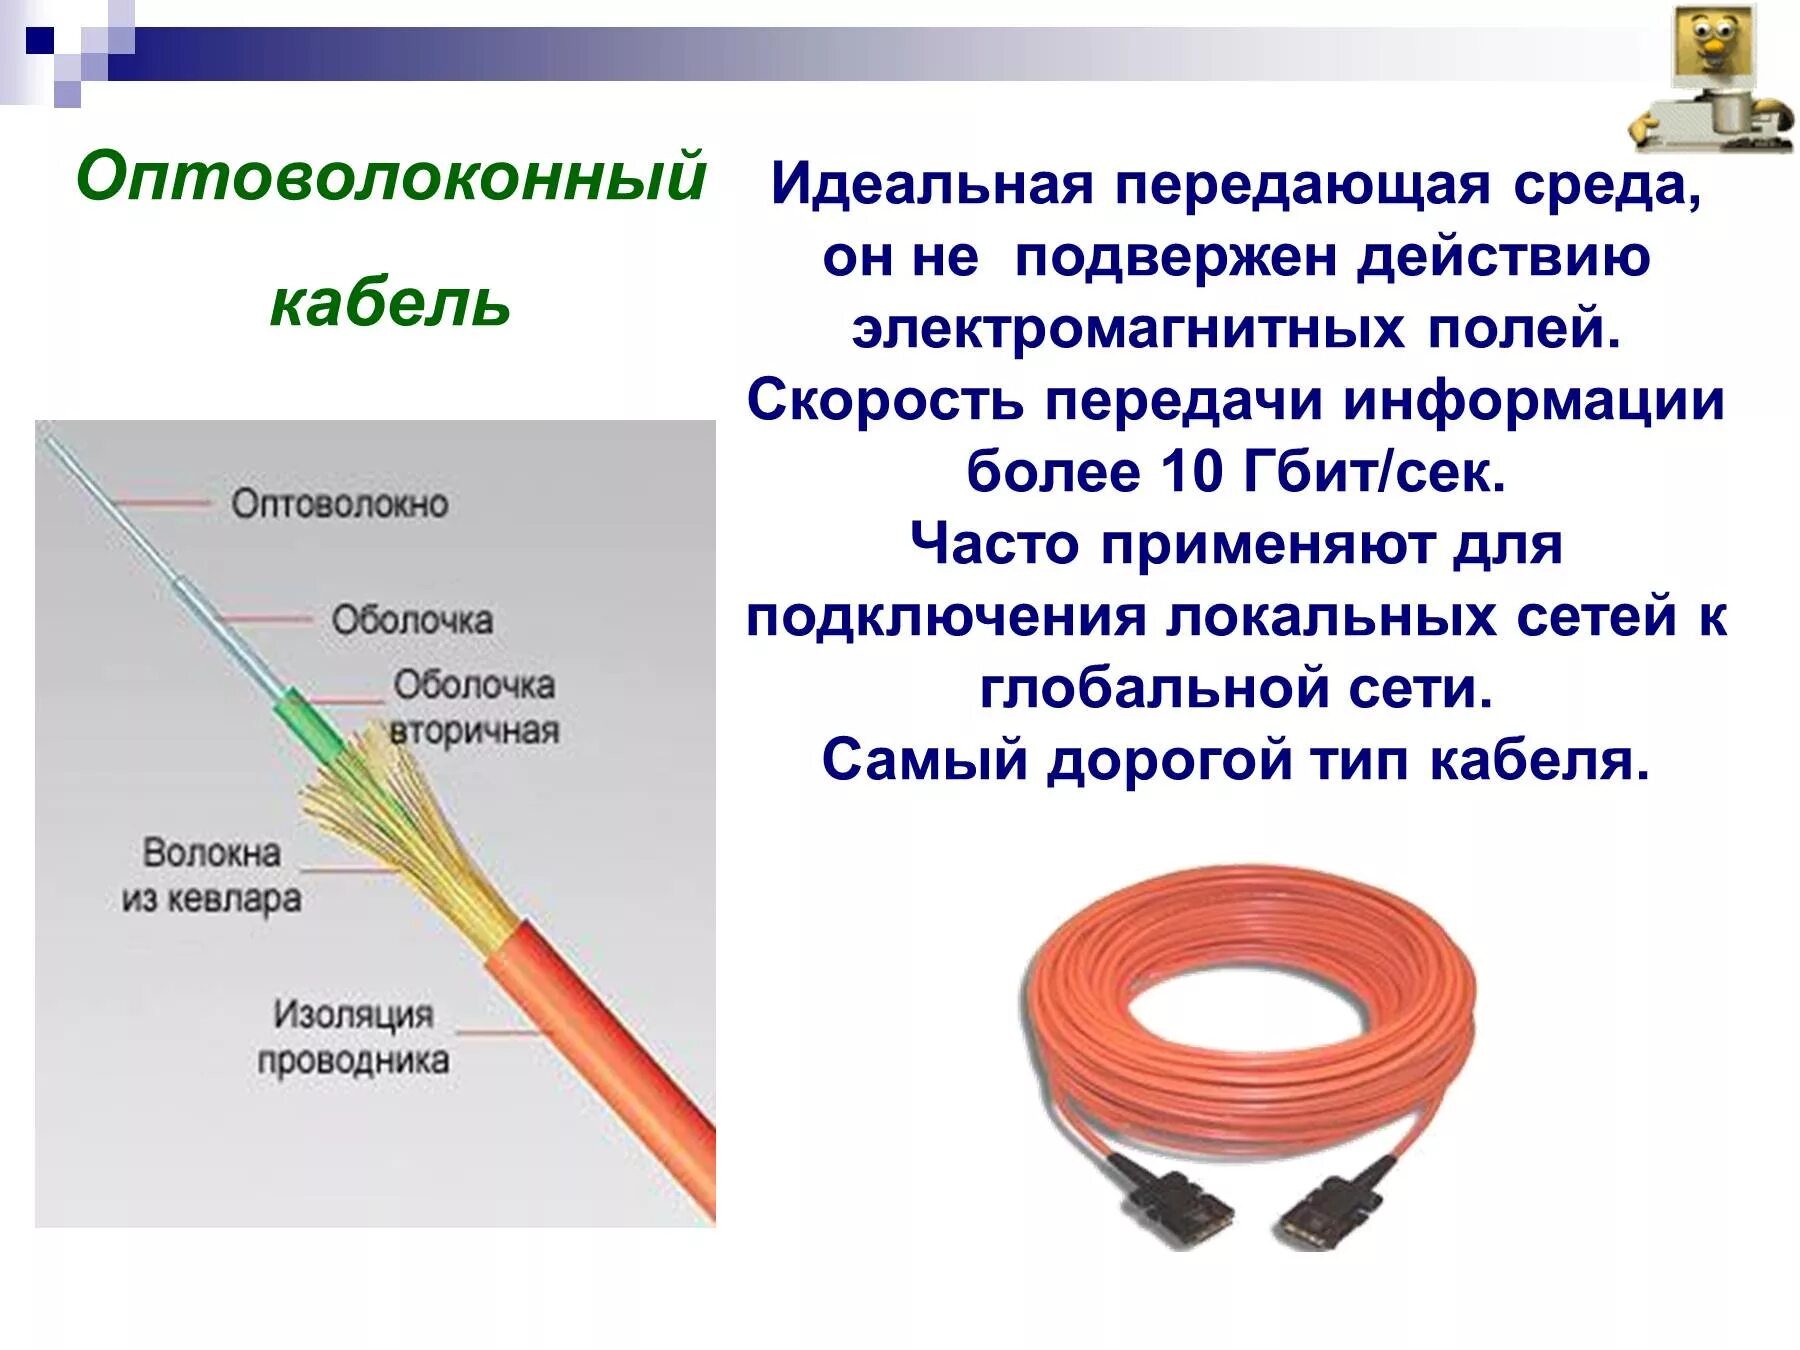 Волокнооптические кабеля скорость передачи. Волоконно оптический кабель скорость передачи данных. Витая пара скорость передачи и оптоволокно. Скорость передачи данных по волоконно-оптическому кабелю.